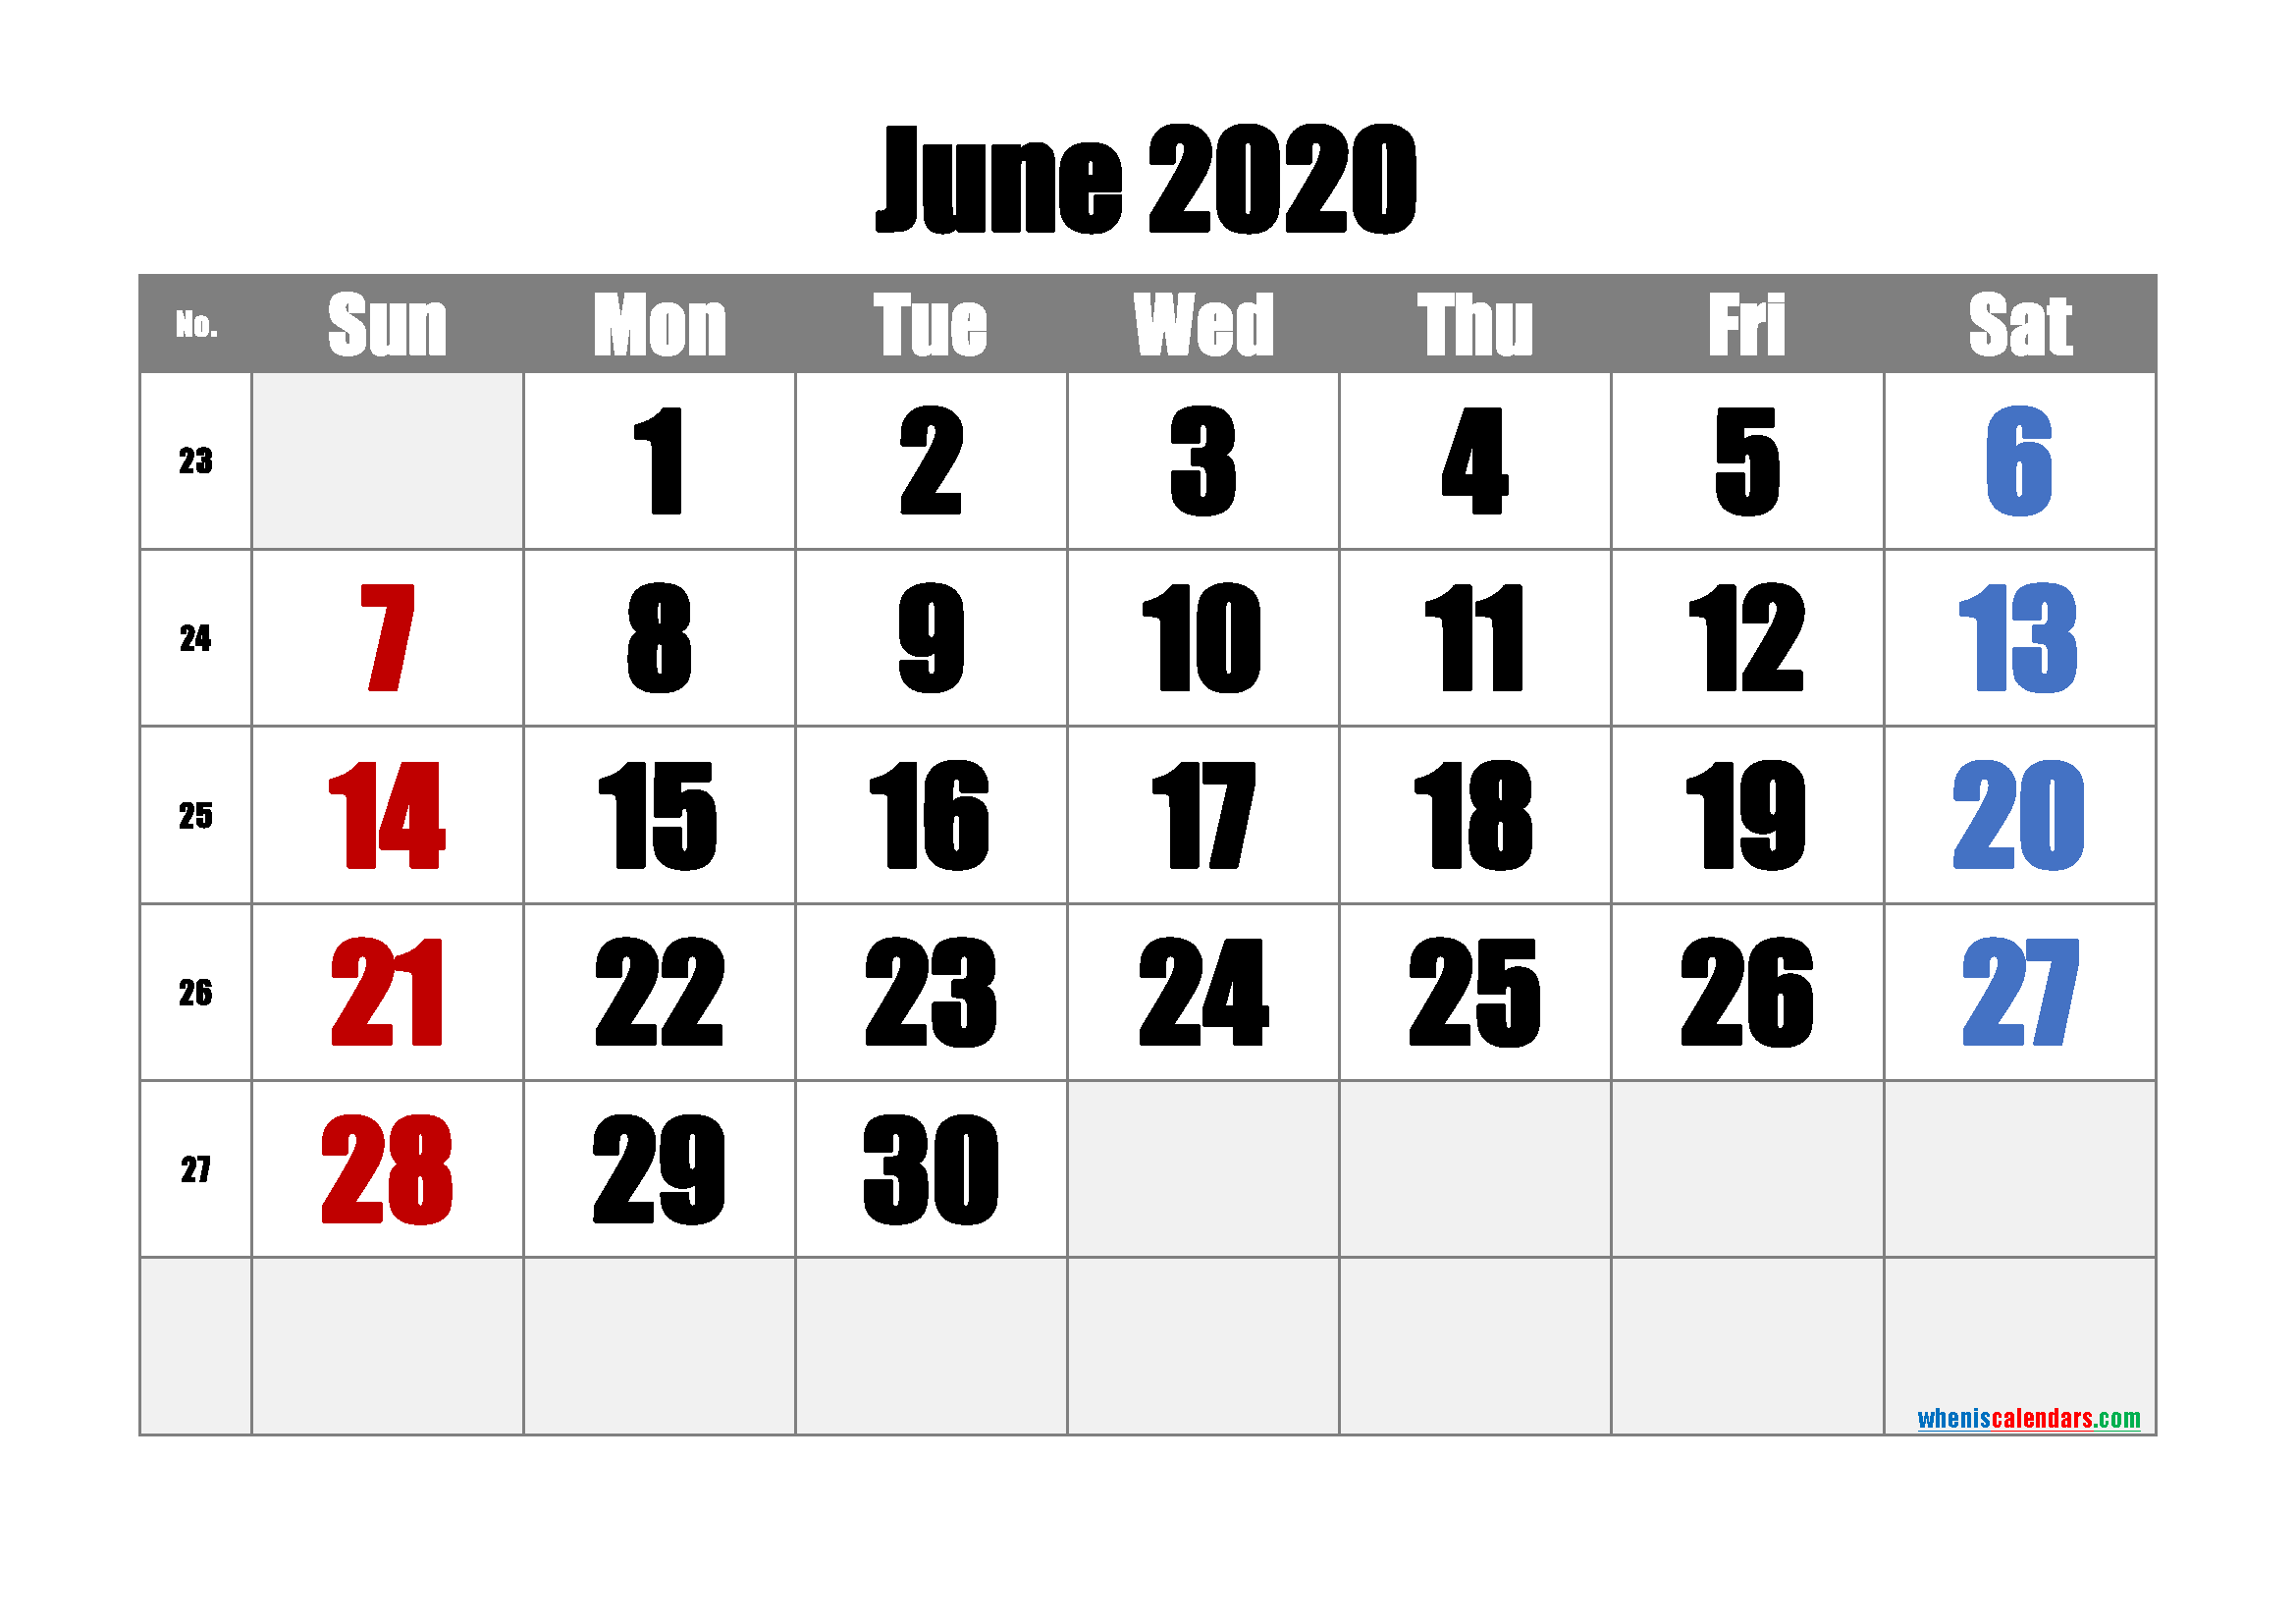 Free Printable June 2020 Calendar